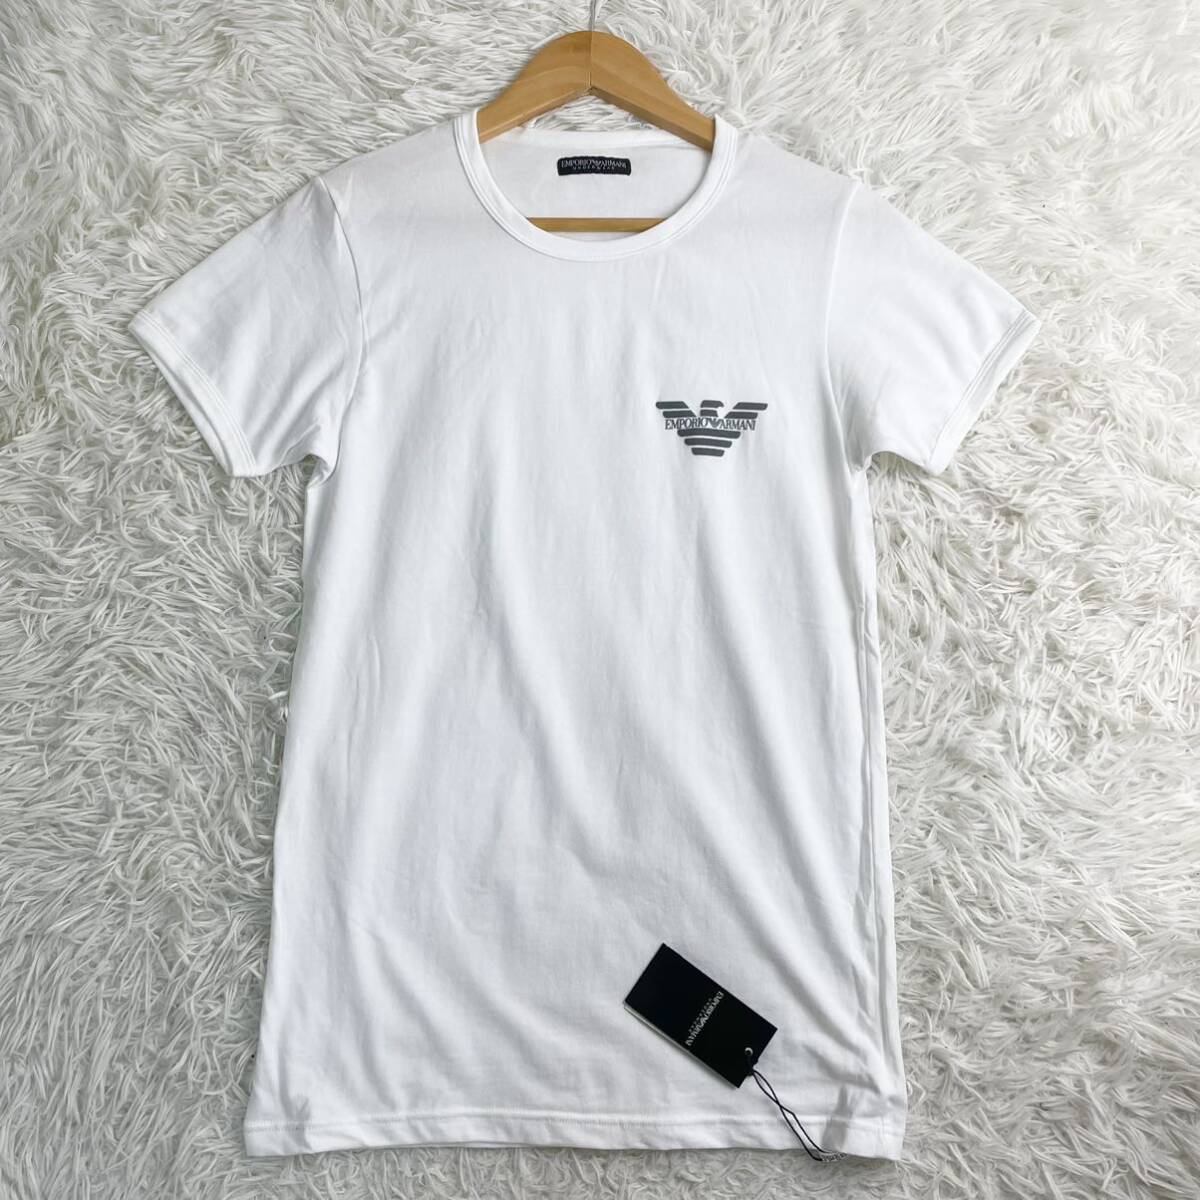 【E34】新品◎EMPORIO ARMANI エンポリオアルマーニ Tシャツ 半袖 ロゴ プリント ホワイト ブラック 48 Mサイズ 白×黒 メンズ トップス _画像1